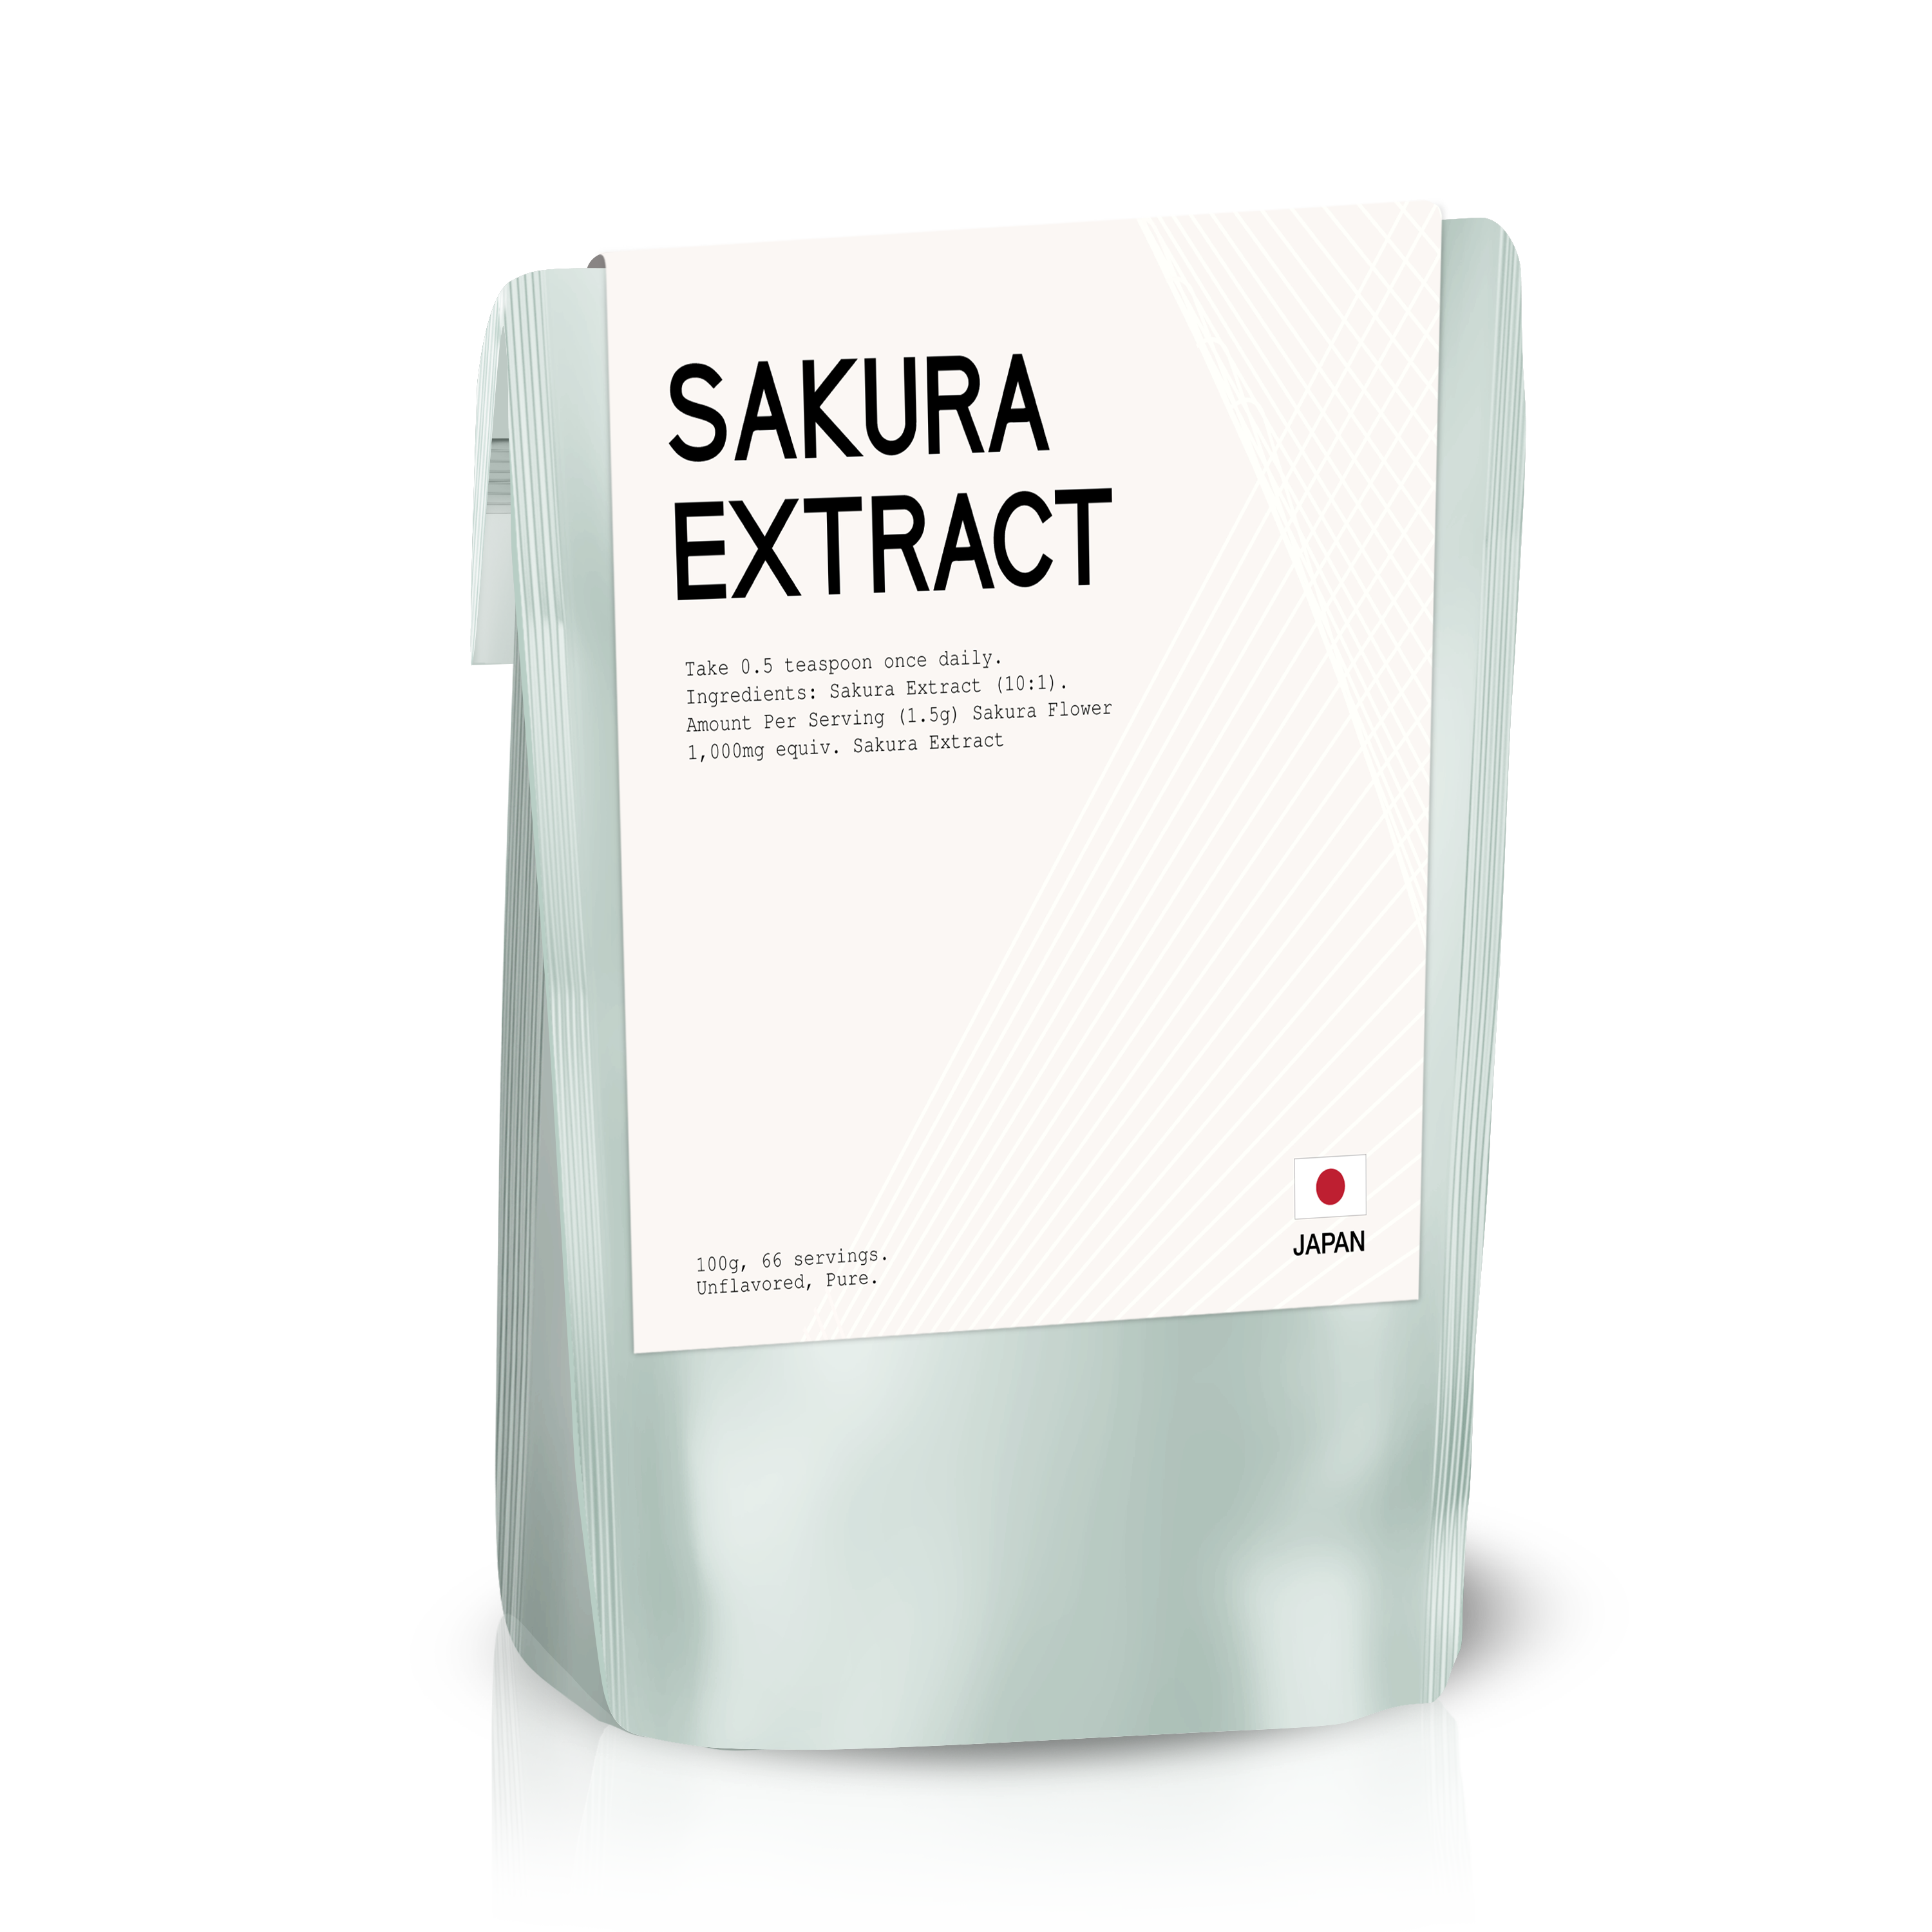 Sakura Extract